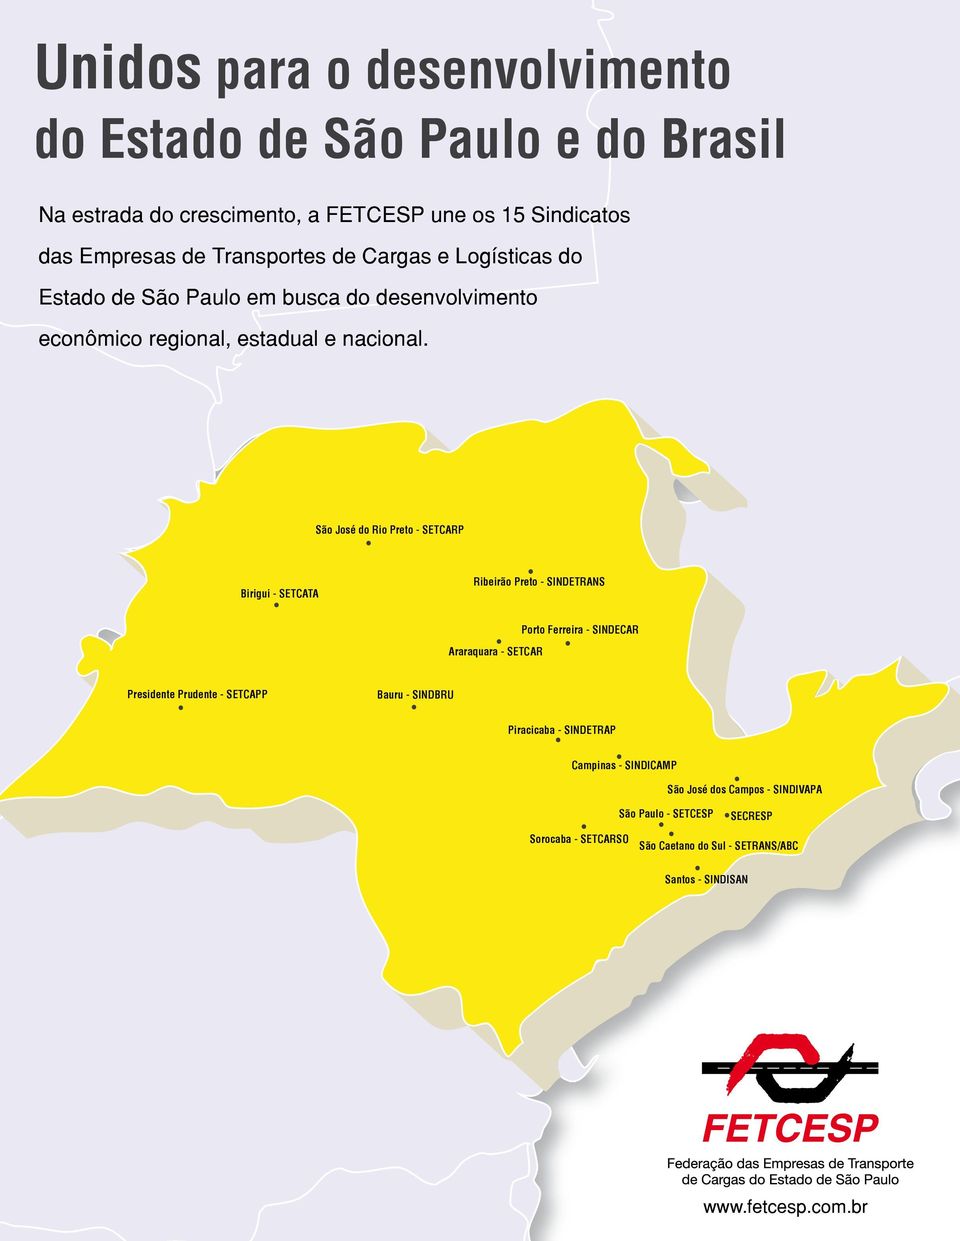 São José do Rio Preto - SETCARP Birigui - SETCATA Ribeirão Preto - SINDETRANS Araraquara - SETCAR Porto Ferreira - SINDECAR Presidente Prudente - SETCAPP